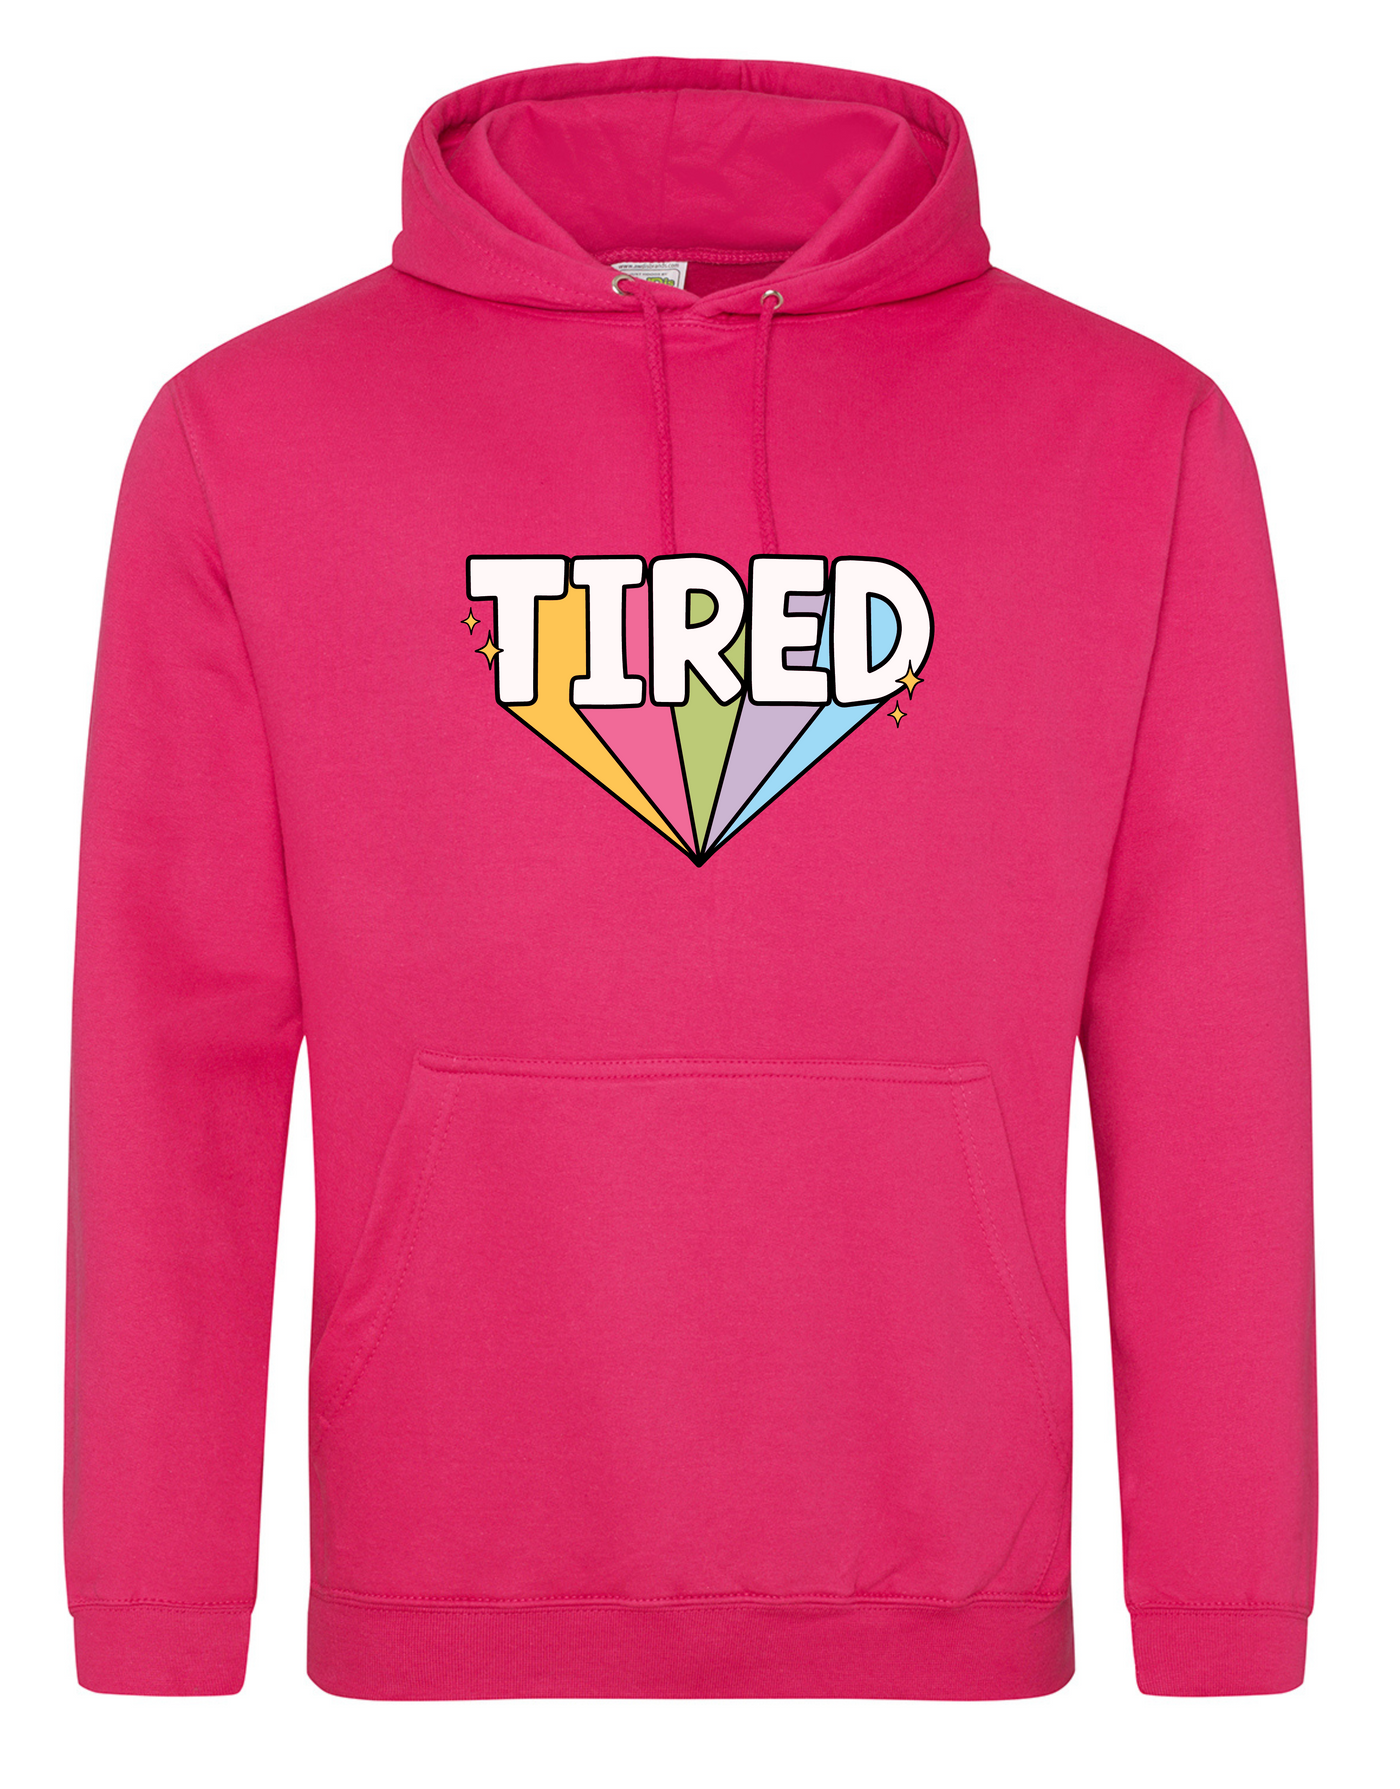 Hot Pink "Tired" Standard Hoodie